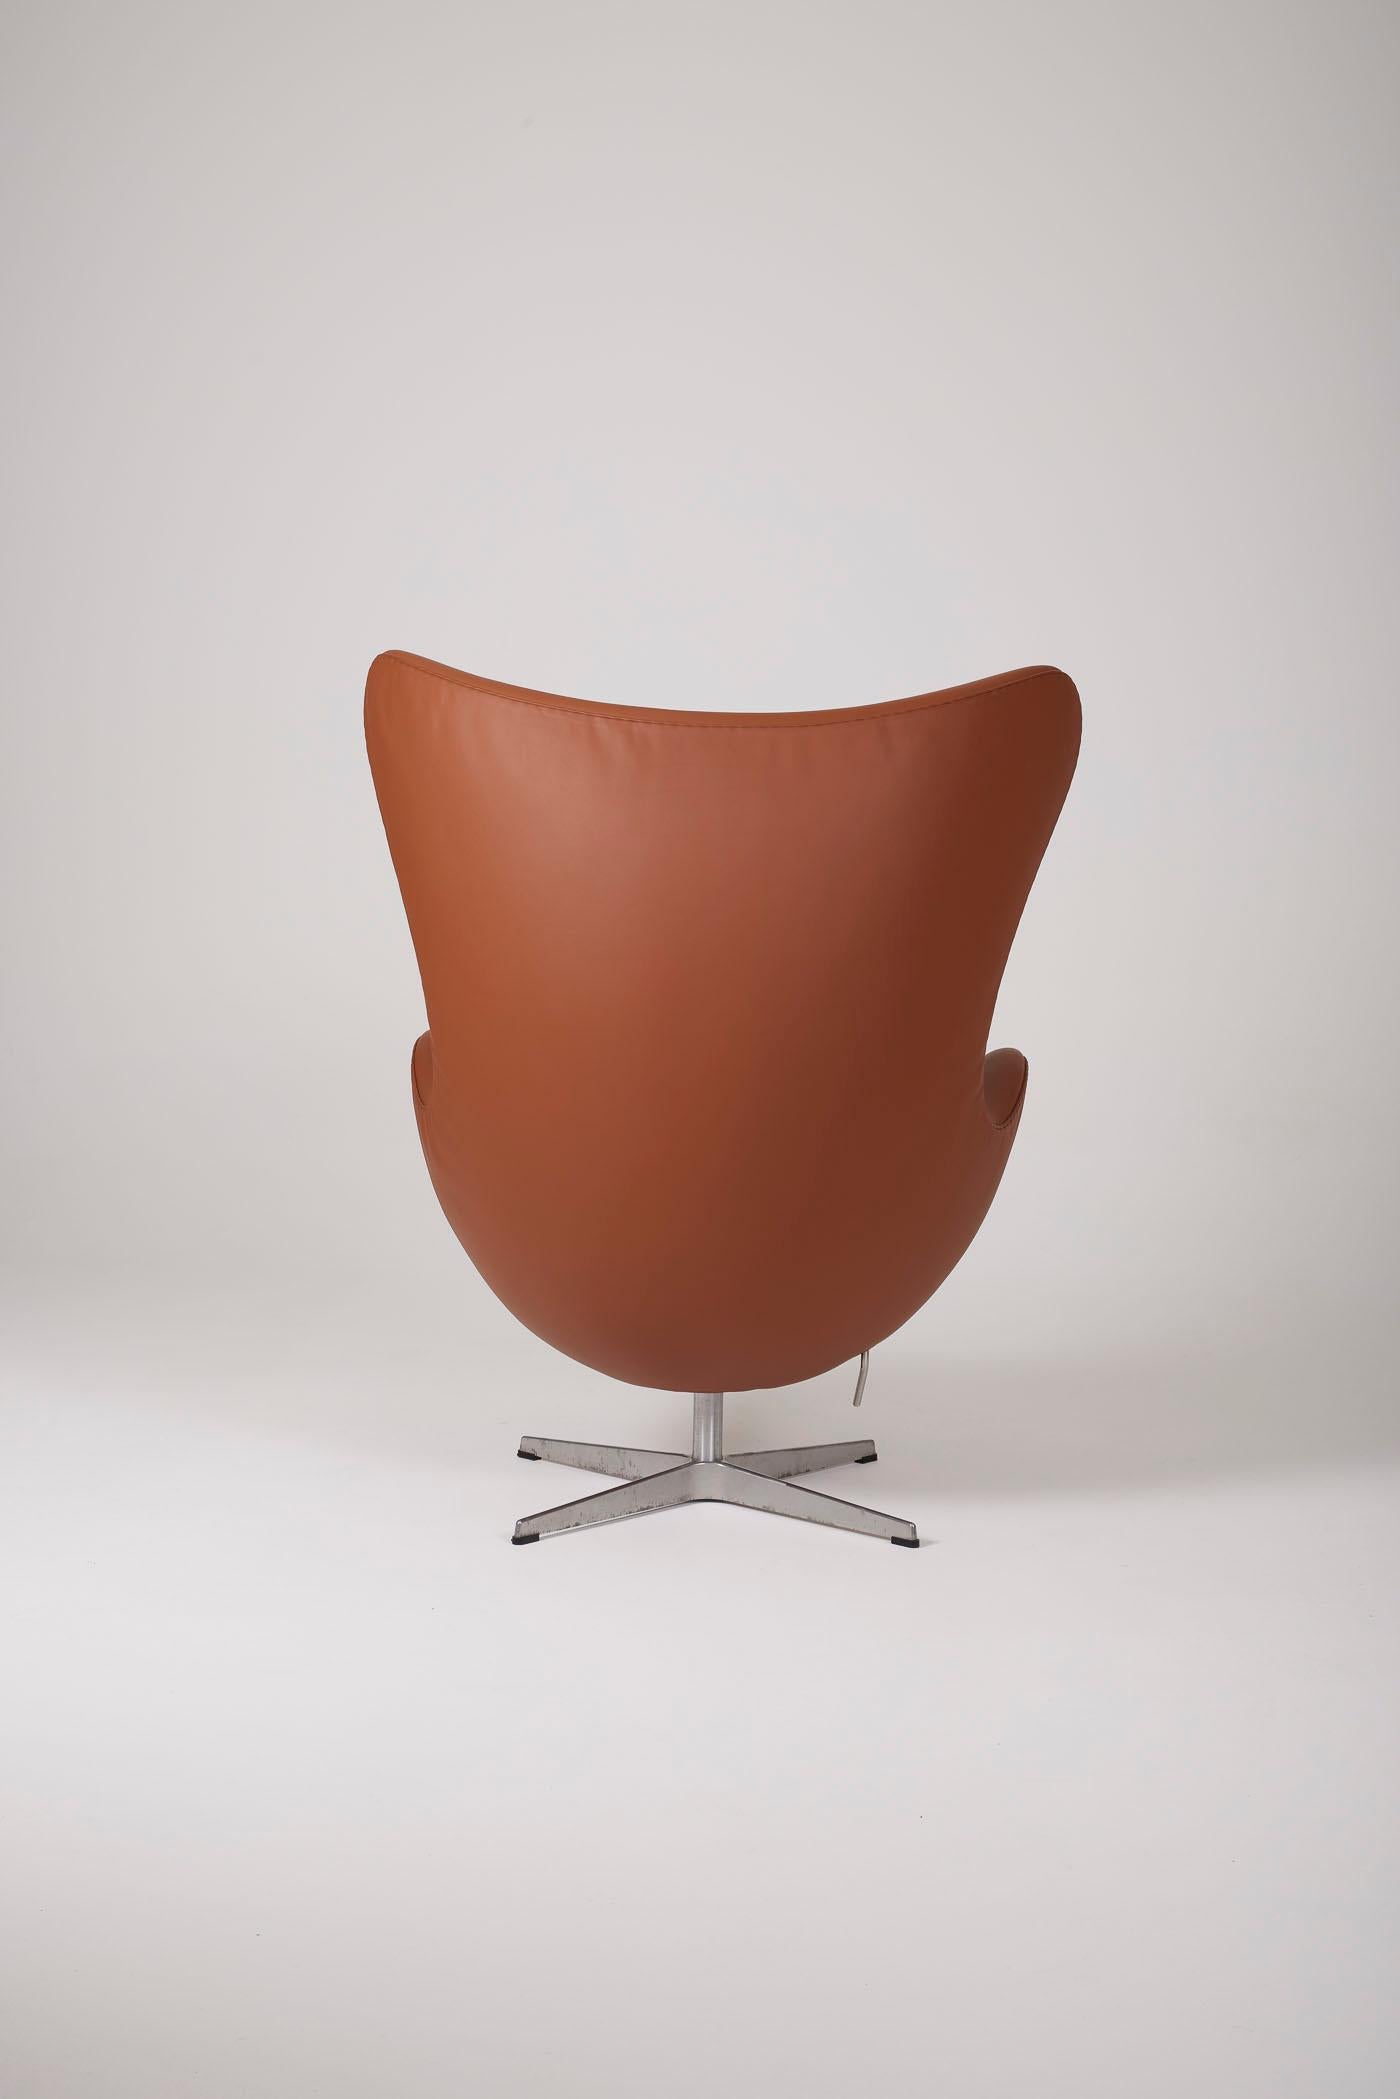 Leather Arne Jacobsen set For Sale